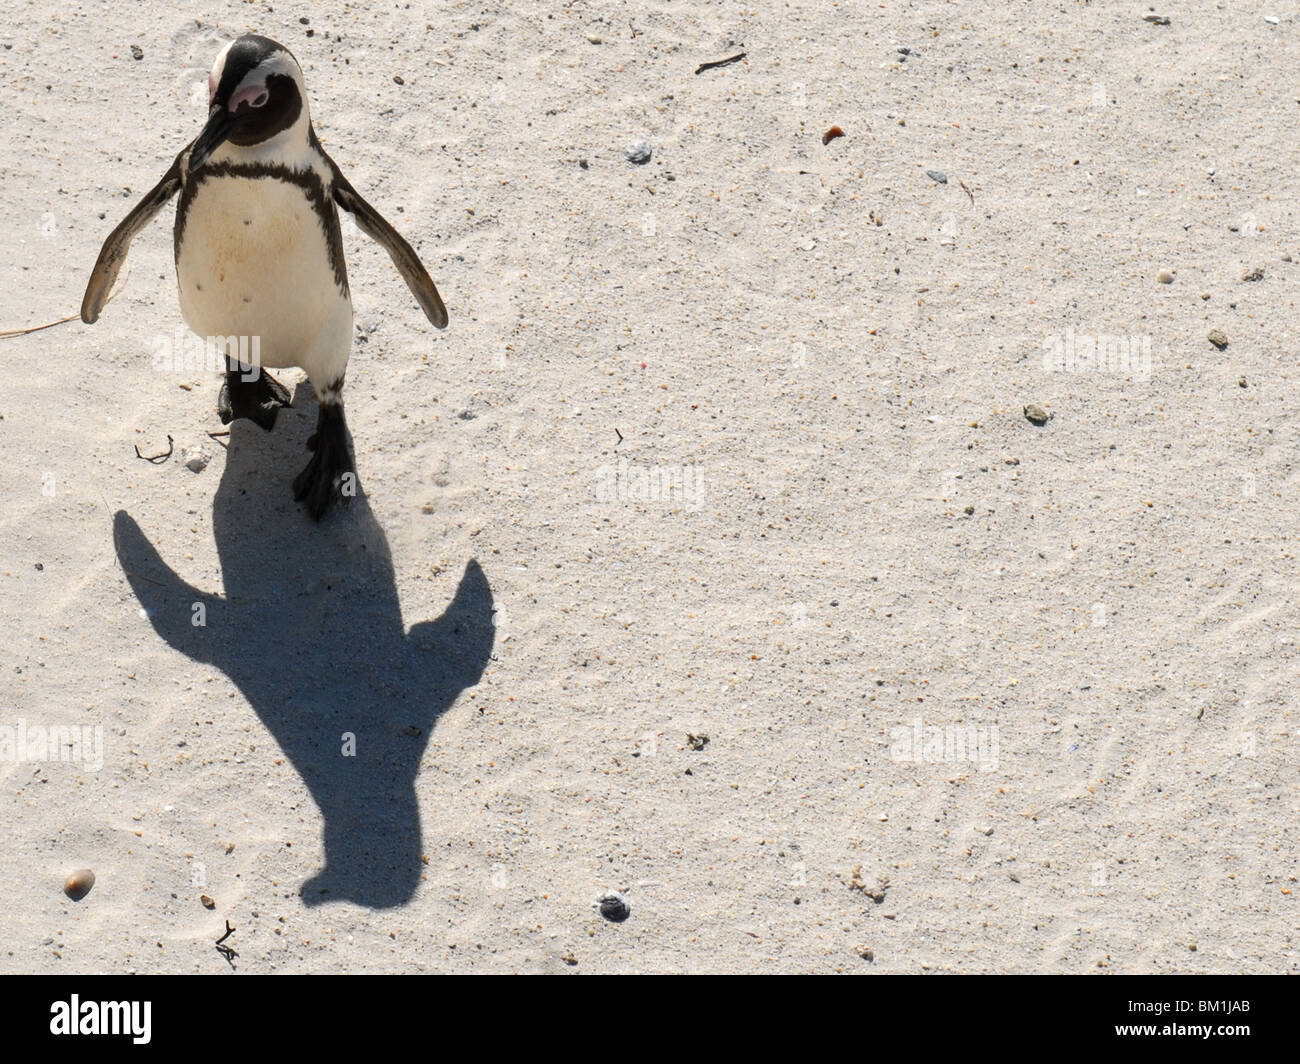 Walking Pinguin, looking at his shadow Stock Photo